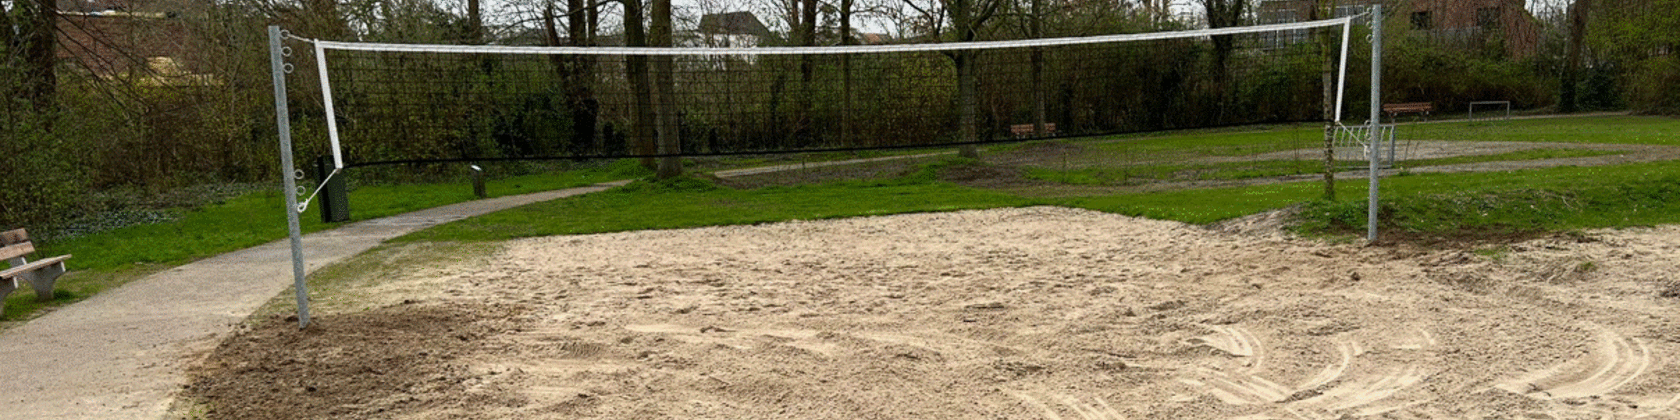 volleybalveld Biest